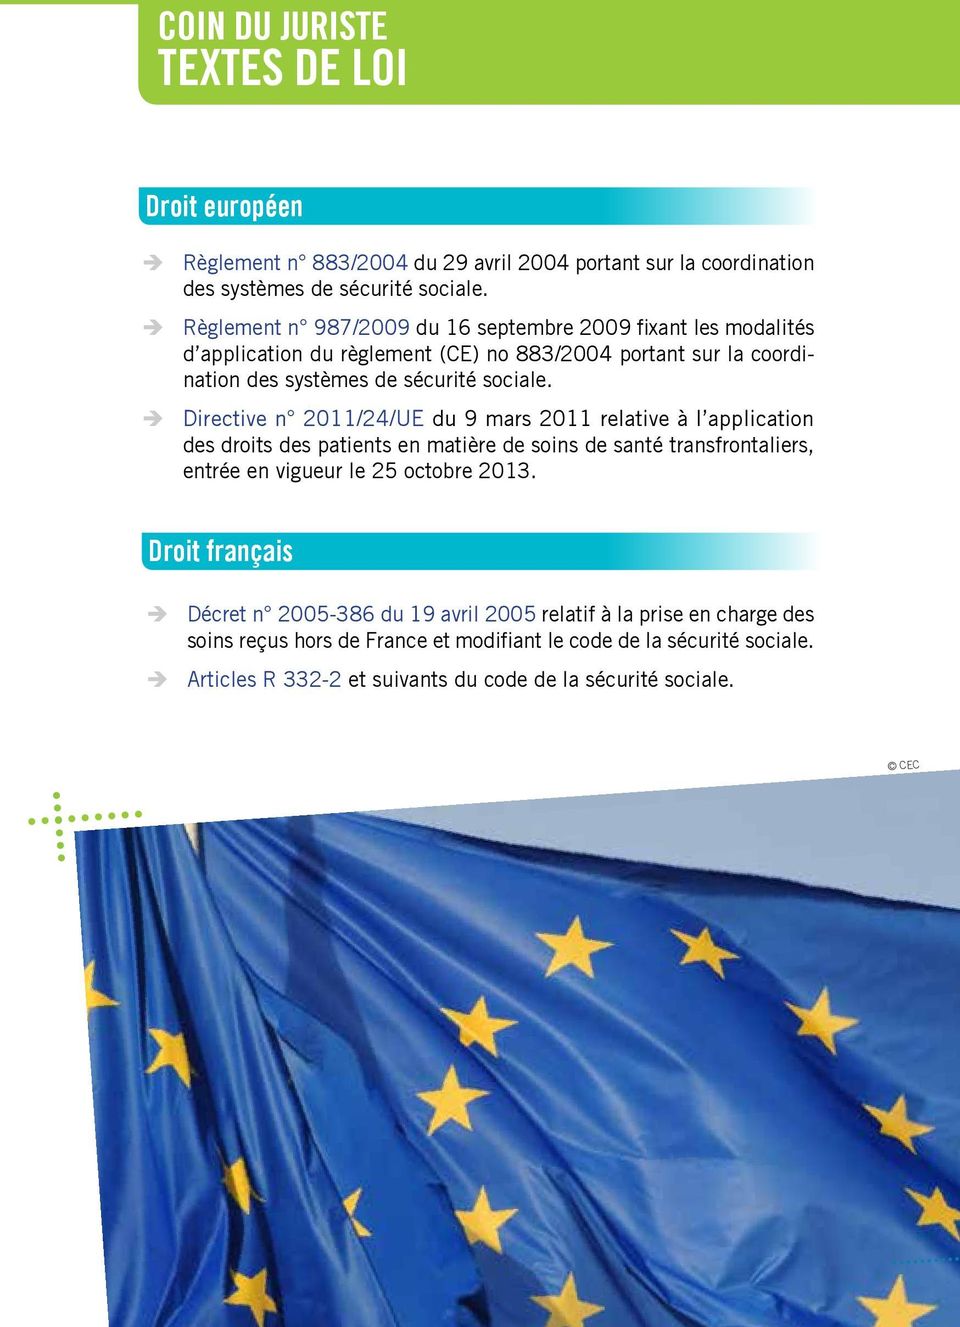 Directive n 2011/24/UE du 9 mars 2011 relative à l application des droits des patients en matière de soins de santé transfrontaliers, entrée en vigueur le 25 octobre 2013.